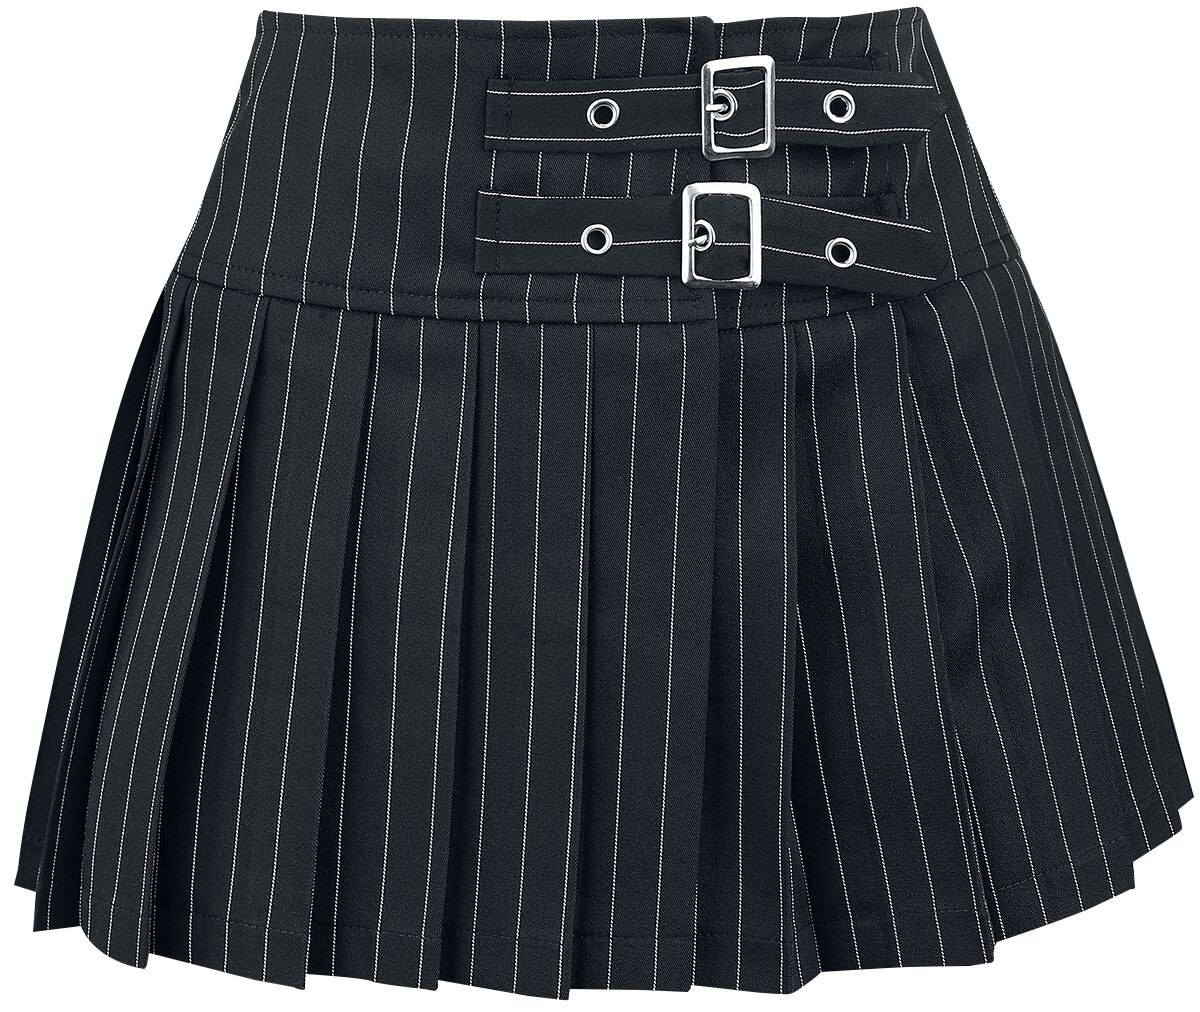 Banned Alternative - Gothic Kurzer Rock - Sisterhood Skirt - XS bis XL - für Damen - Größe XL - schwarz/weiß